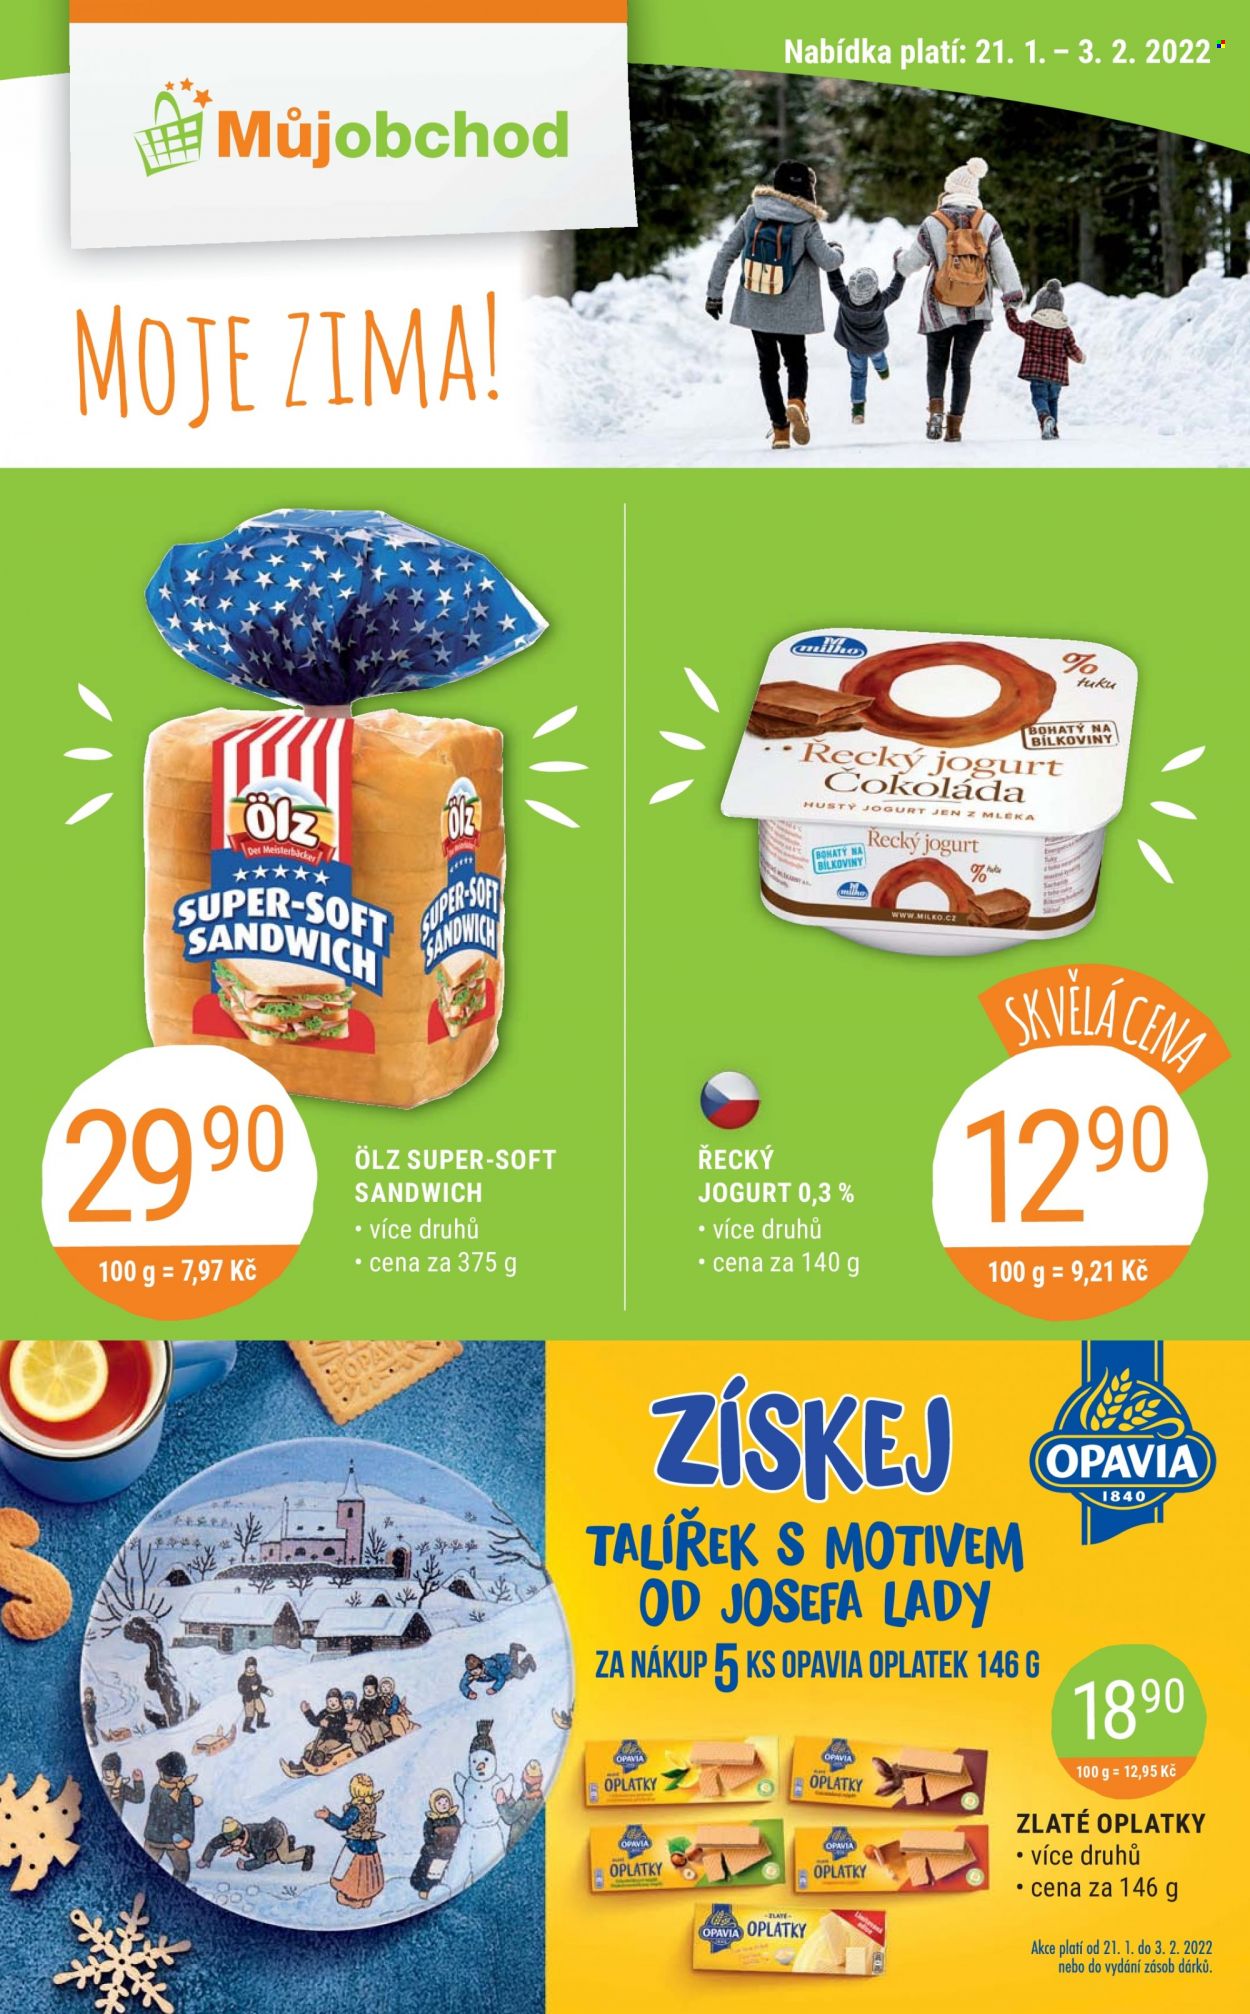 thumbnail - Leták Můj obchod - 21.1.2022 - 3.2.2022 - Produkty v akci - toustový chléb, Ölz, Milko, jogurt, řecký jogurt, Opavia, Zlaté oplatky. Strana 1.